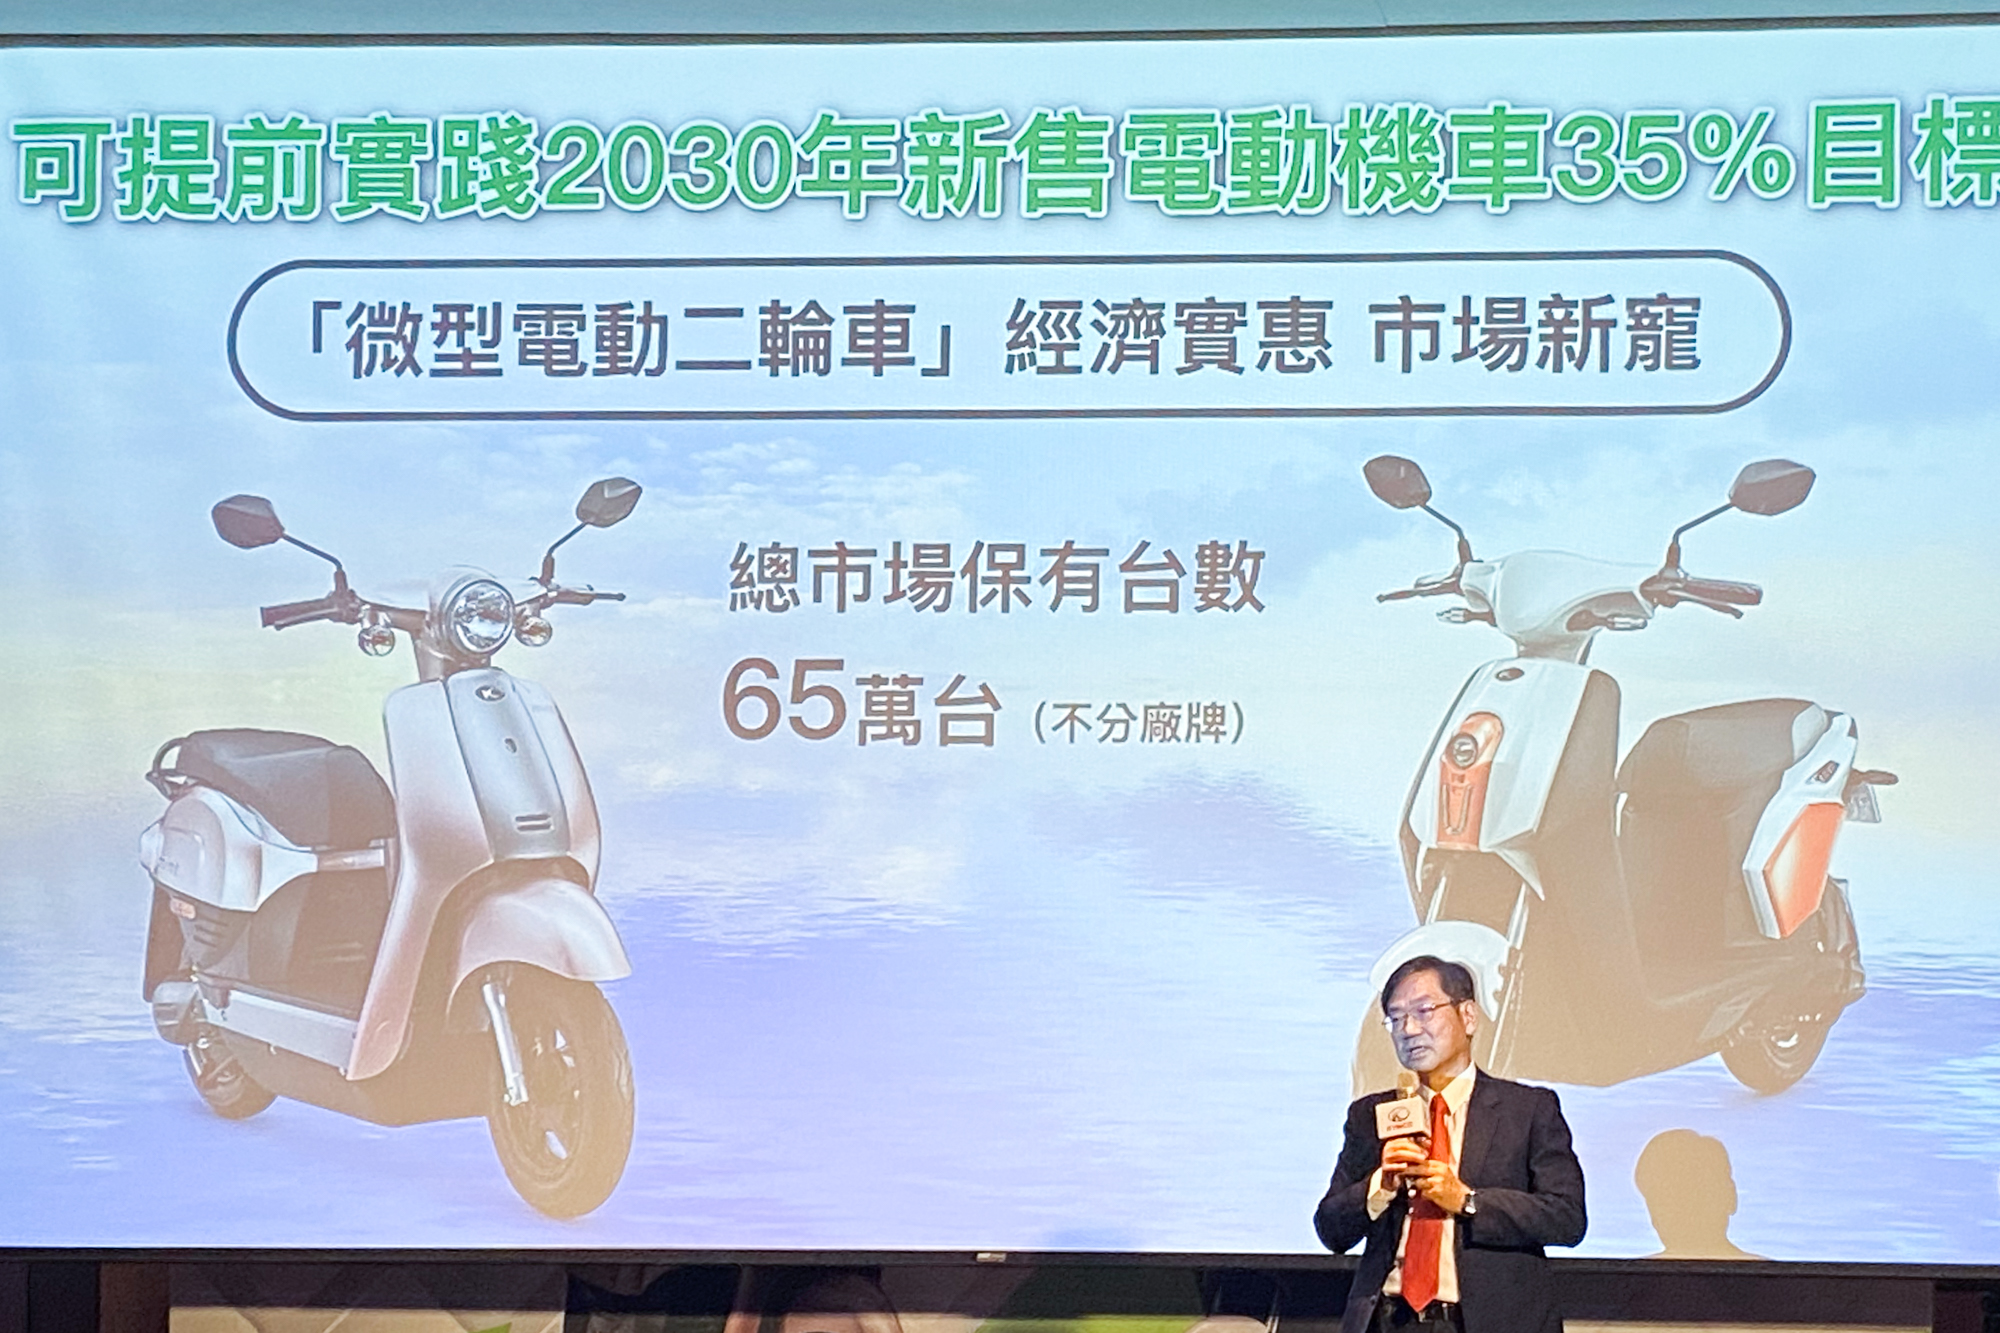 2014 年至 2022 年 10 月底止，全台微型電動二輪車約莫有 69.5 萬輛，平均每年約以 8~10 萬數量增加。